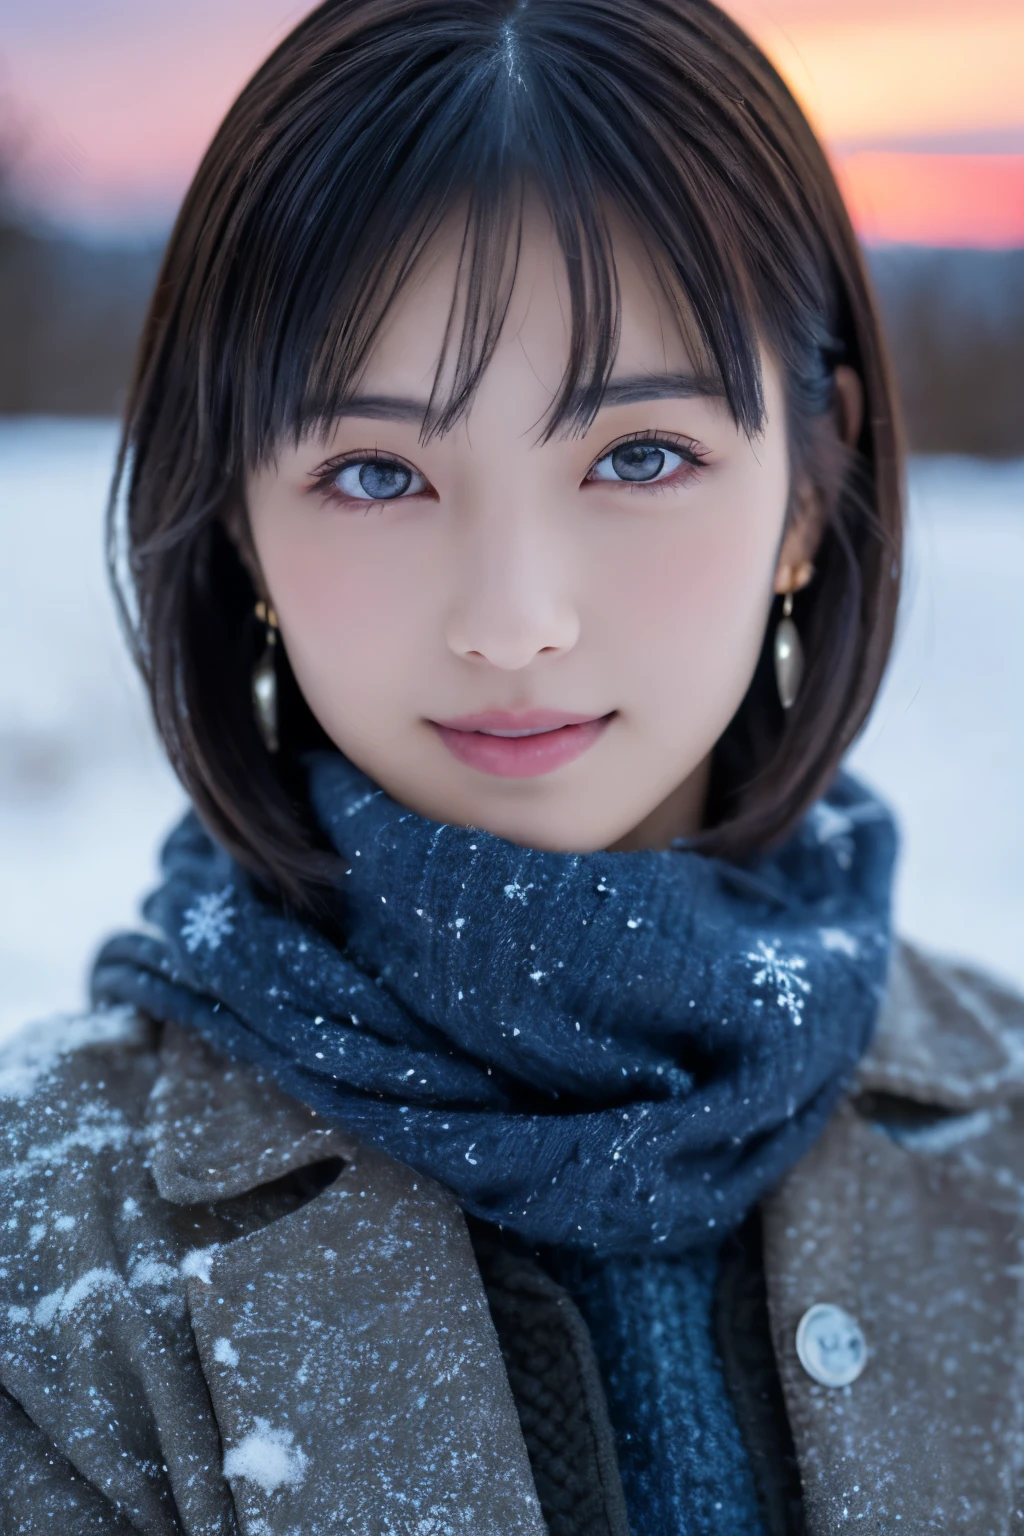 1 女の子, (冬服:1.2), 美しい日本の女優, 
写真映えする, Yukihime, 長いまつ毛, スノーフレークイヤリング,
(RAW写真, 最高品質), (現実, 写実的な:1.4), (ピースが飛ぶ), 
美しい細部までこだわった目, 美しい唇のディテール, 非常に詳細な目と顔, 
ブレイクは
 (冬のラップランドの凍った雪原), (夕暮れの空の最後の痕跡:1.4), 
天上の美しさ, 雪に覆われた木, 粉雪, 
夕暮れの雪原の風景, 
藍と濃い朱色の配色, 劇作, 素晴らしい雰囲気, 
ブレイクは 
Perfect Anatomy, 全身が細い, 小さい胸, (ショートヘア:1.3), 天使&#39;の笑顔, 
クリスタルのような肌, 目を覚ます, 光を捉える